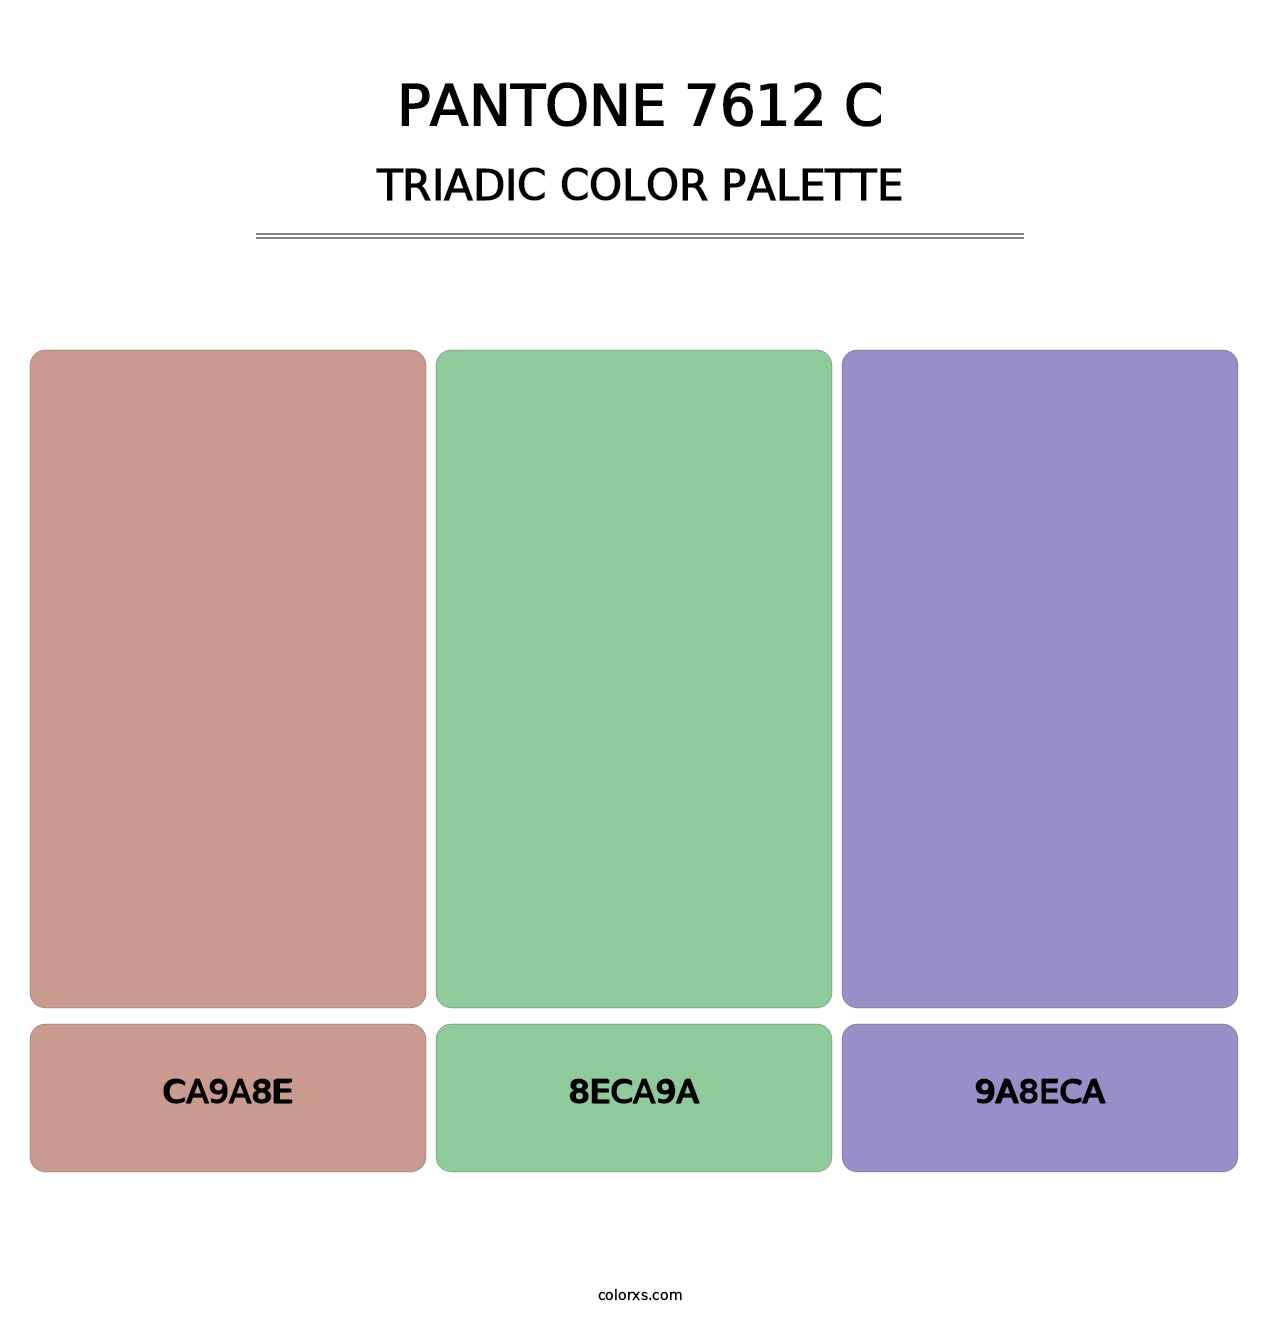 PANTONE 7612 C - Triadic Color Palette